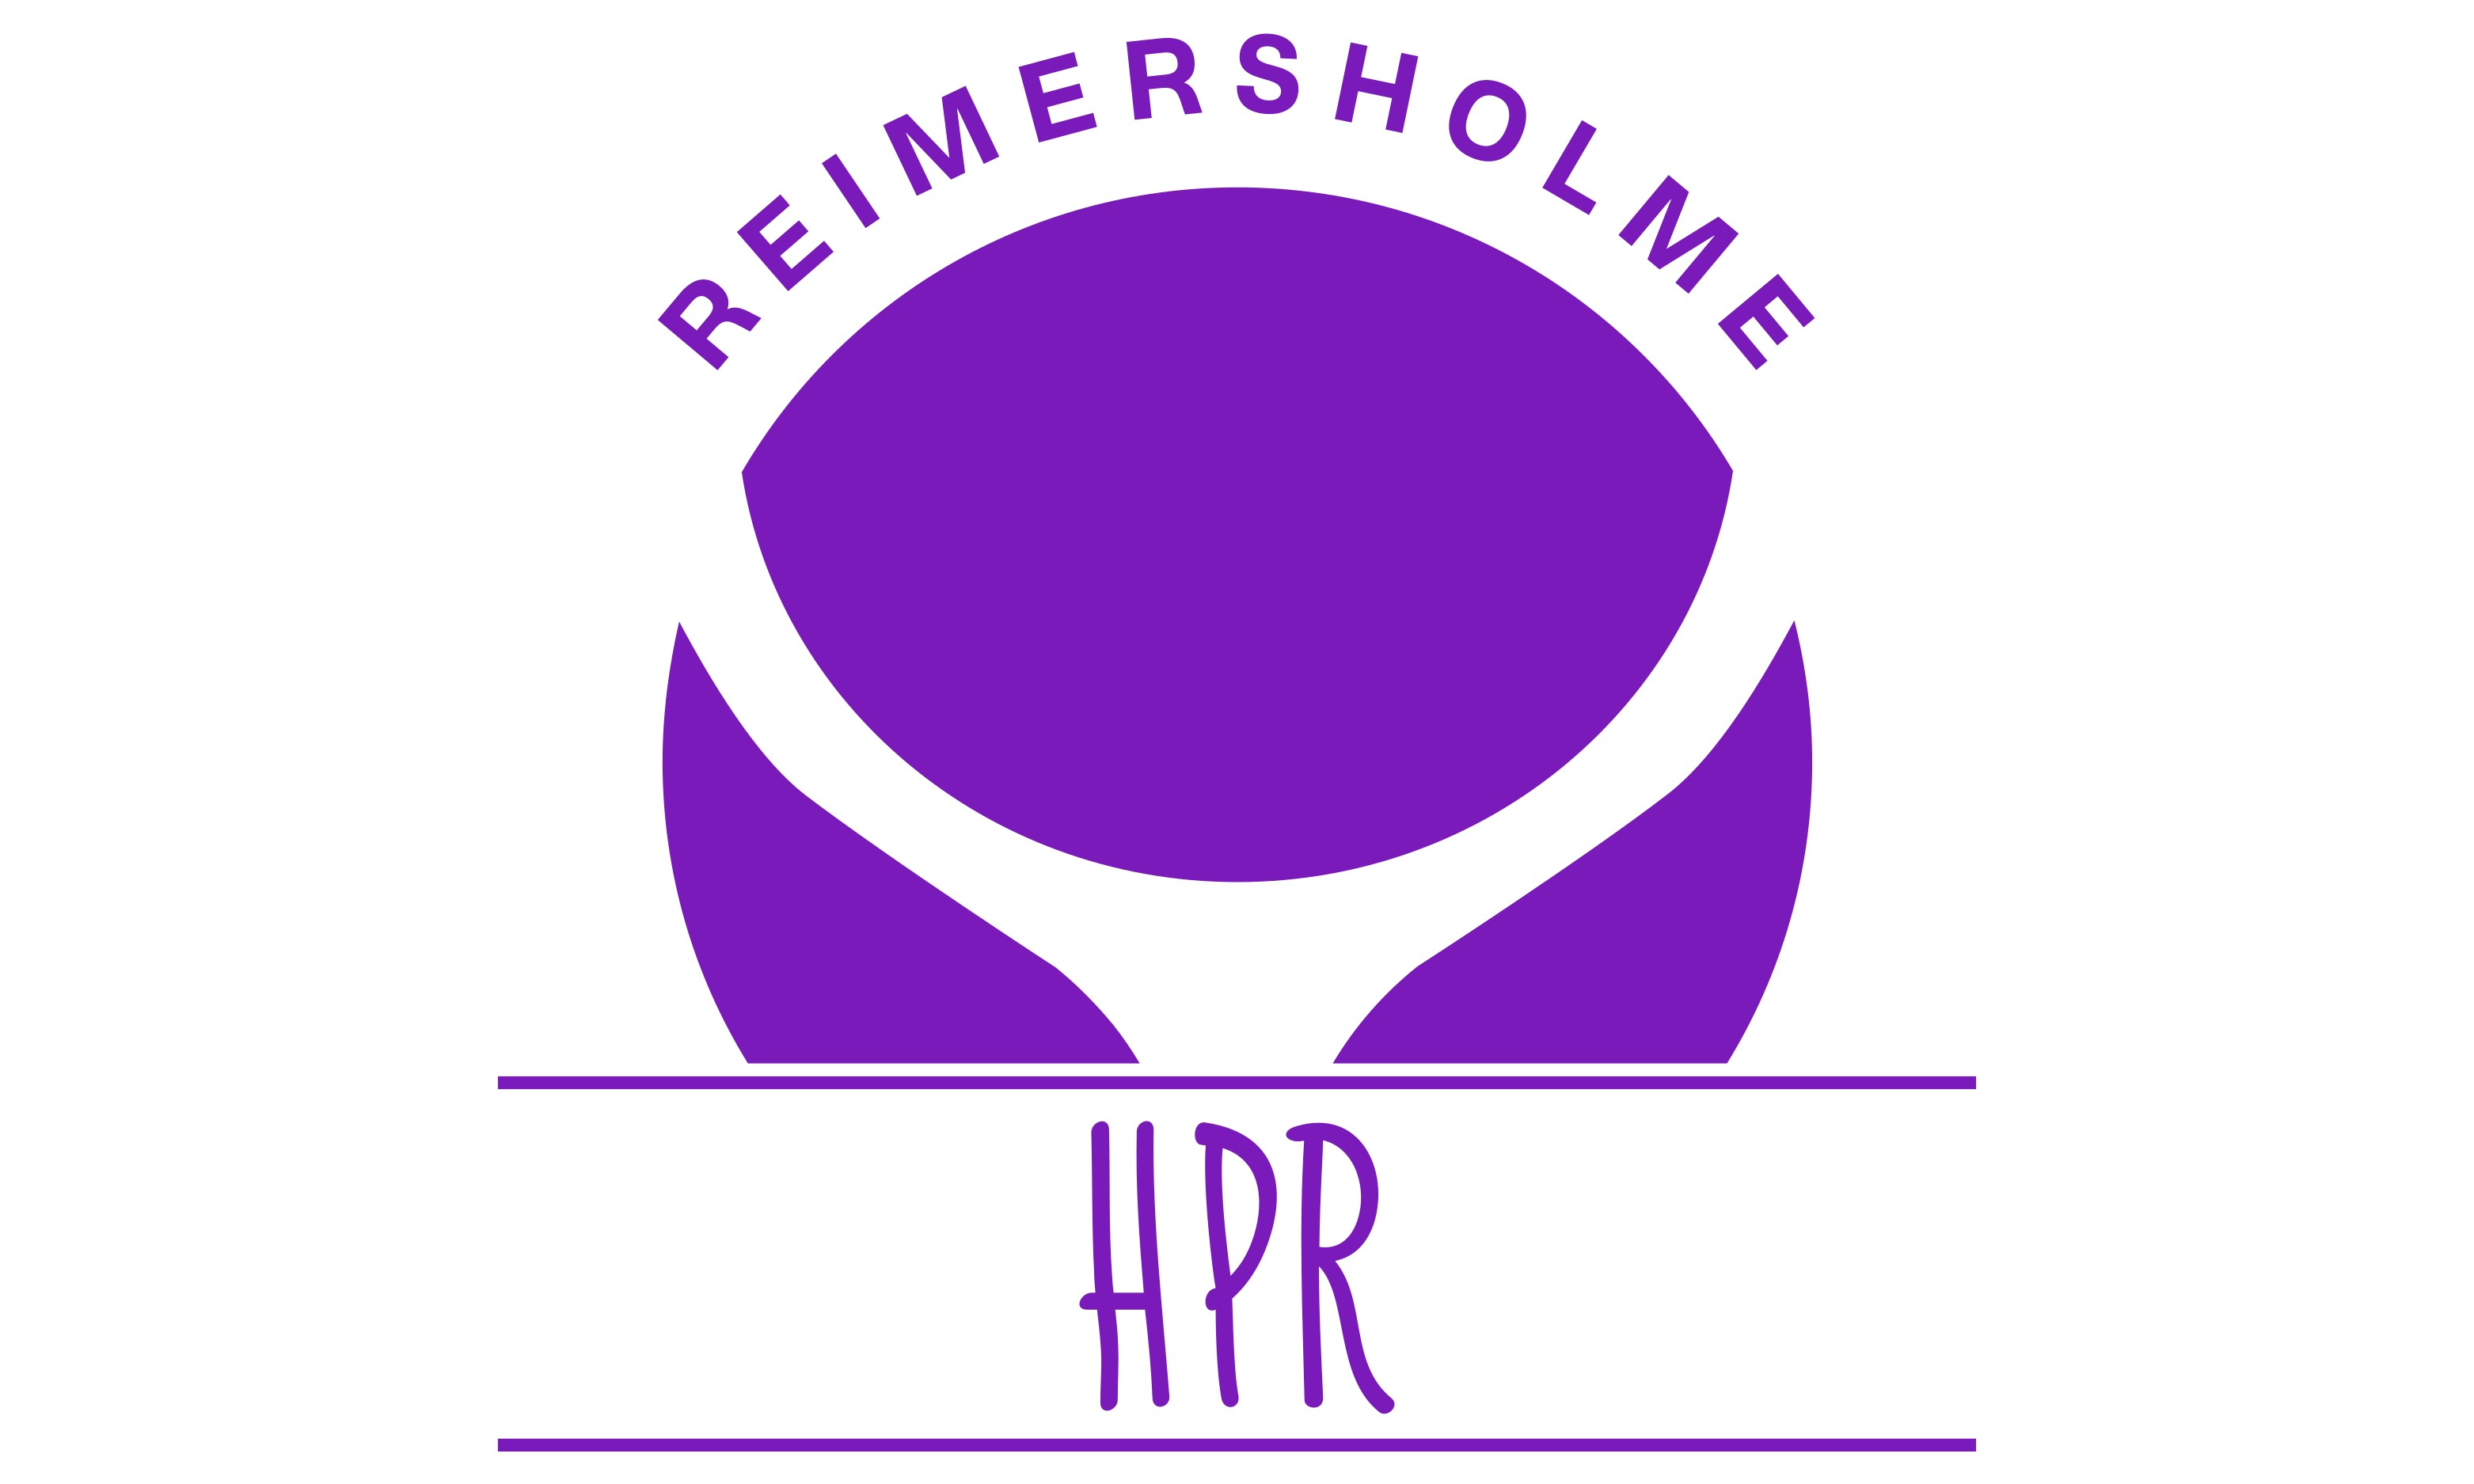 HPR Pensionärsförening Reimersholme